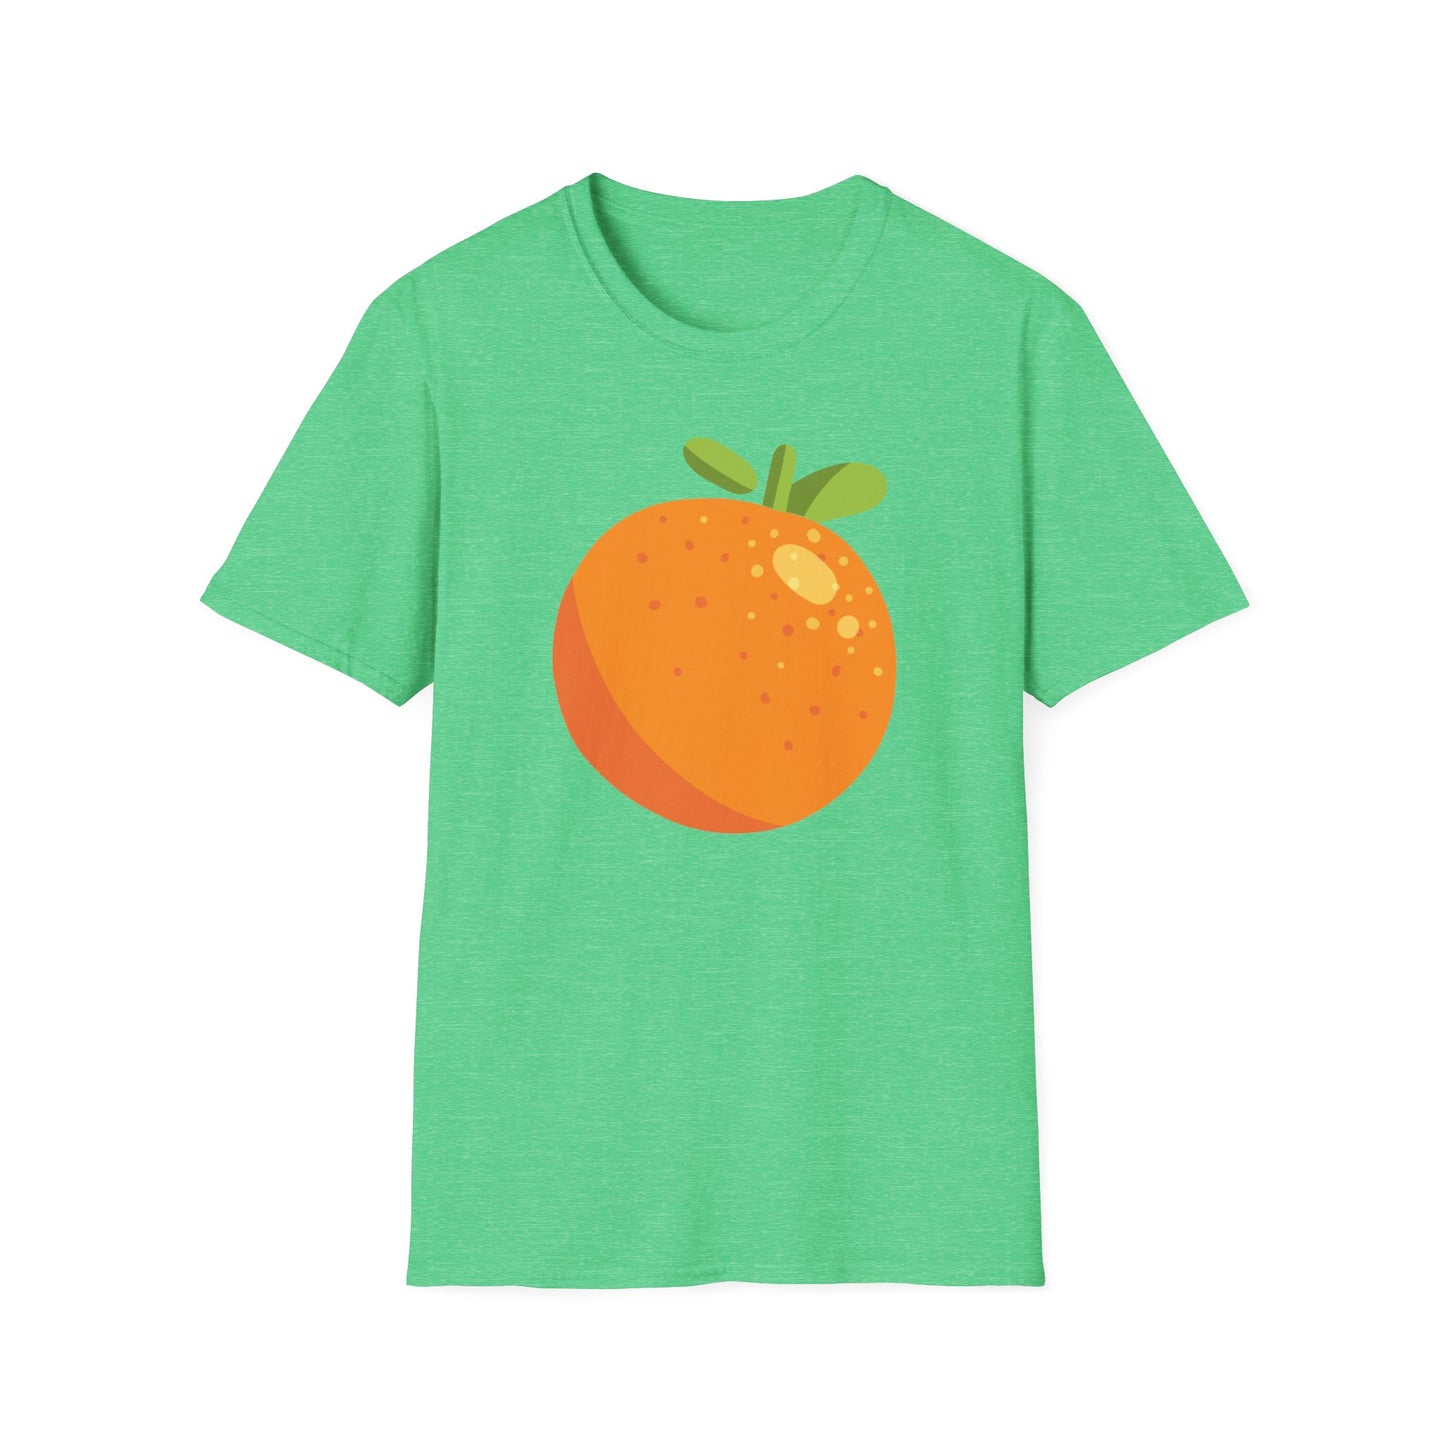 Vibrant Orange T-shirts